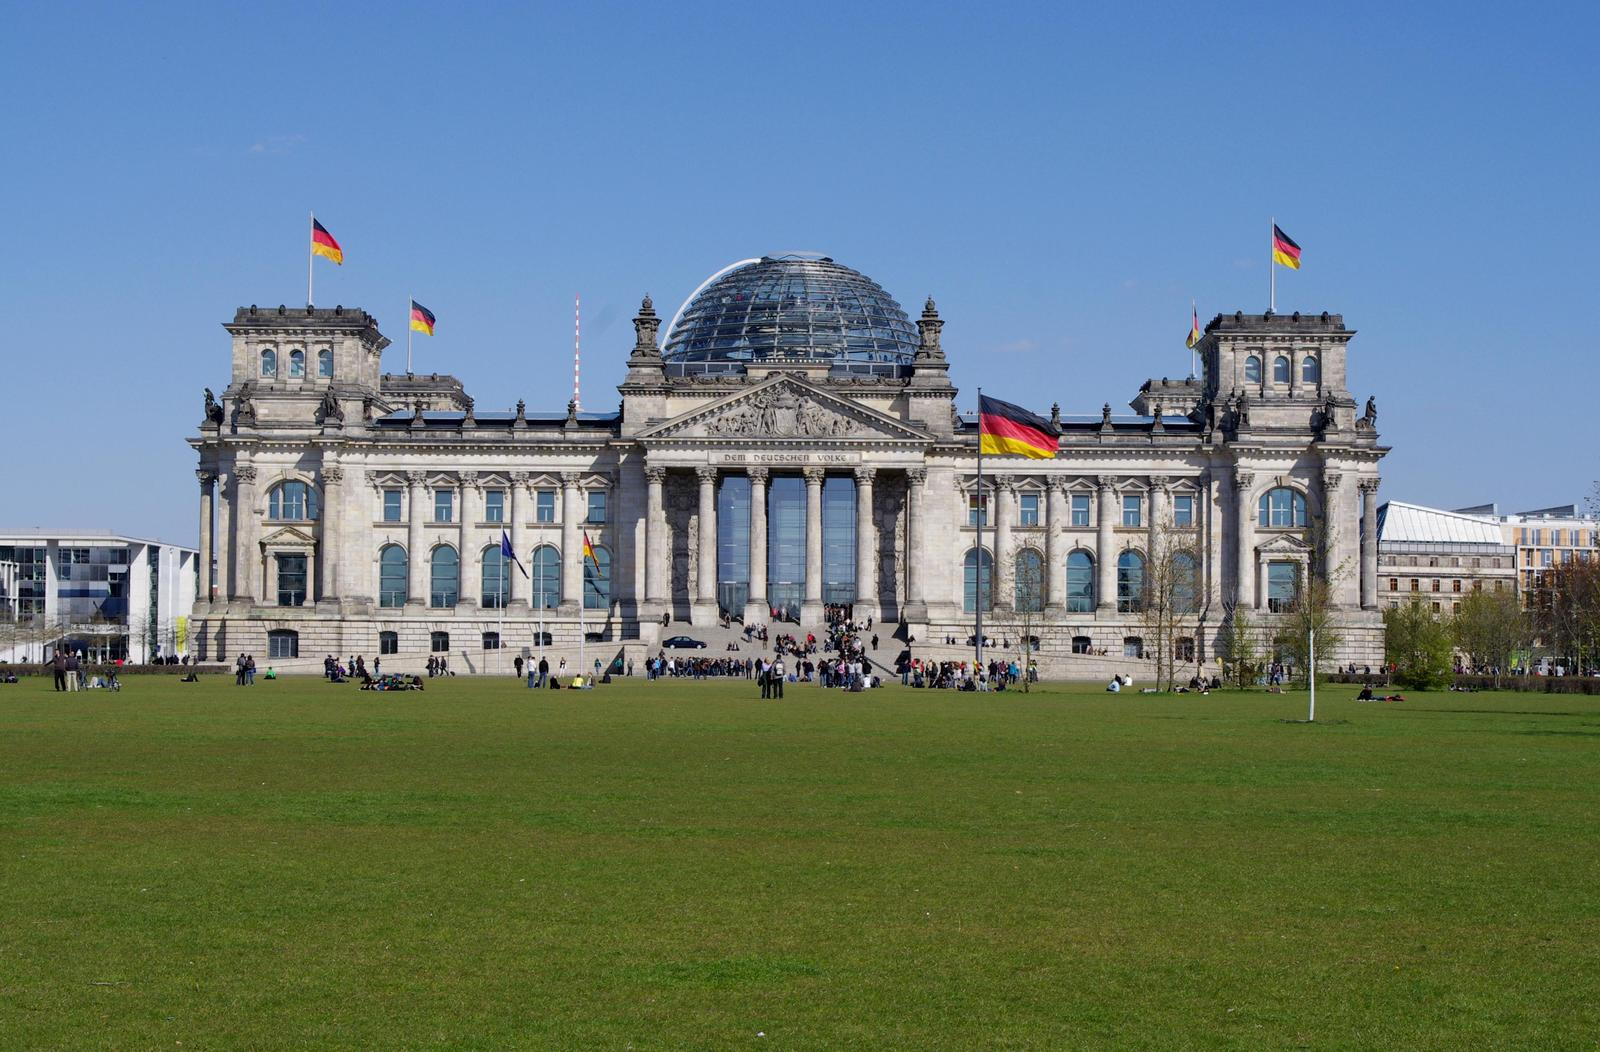 A Reichstag